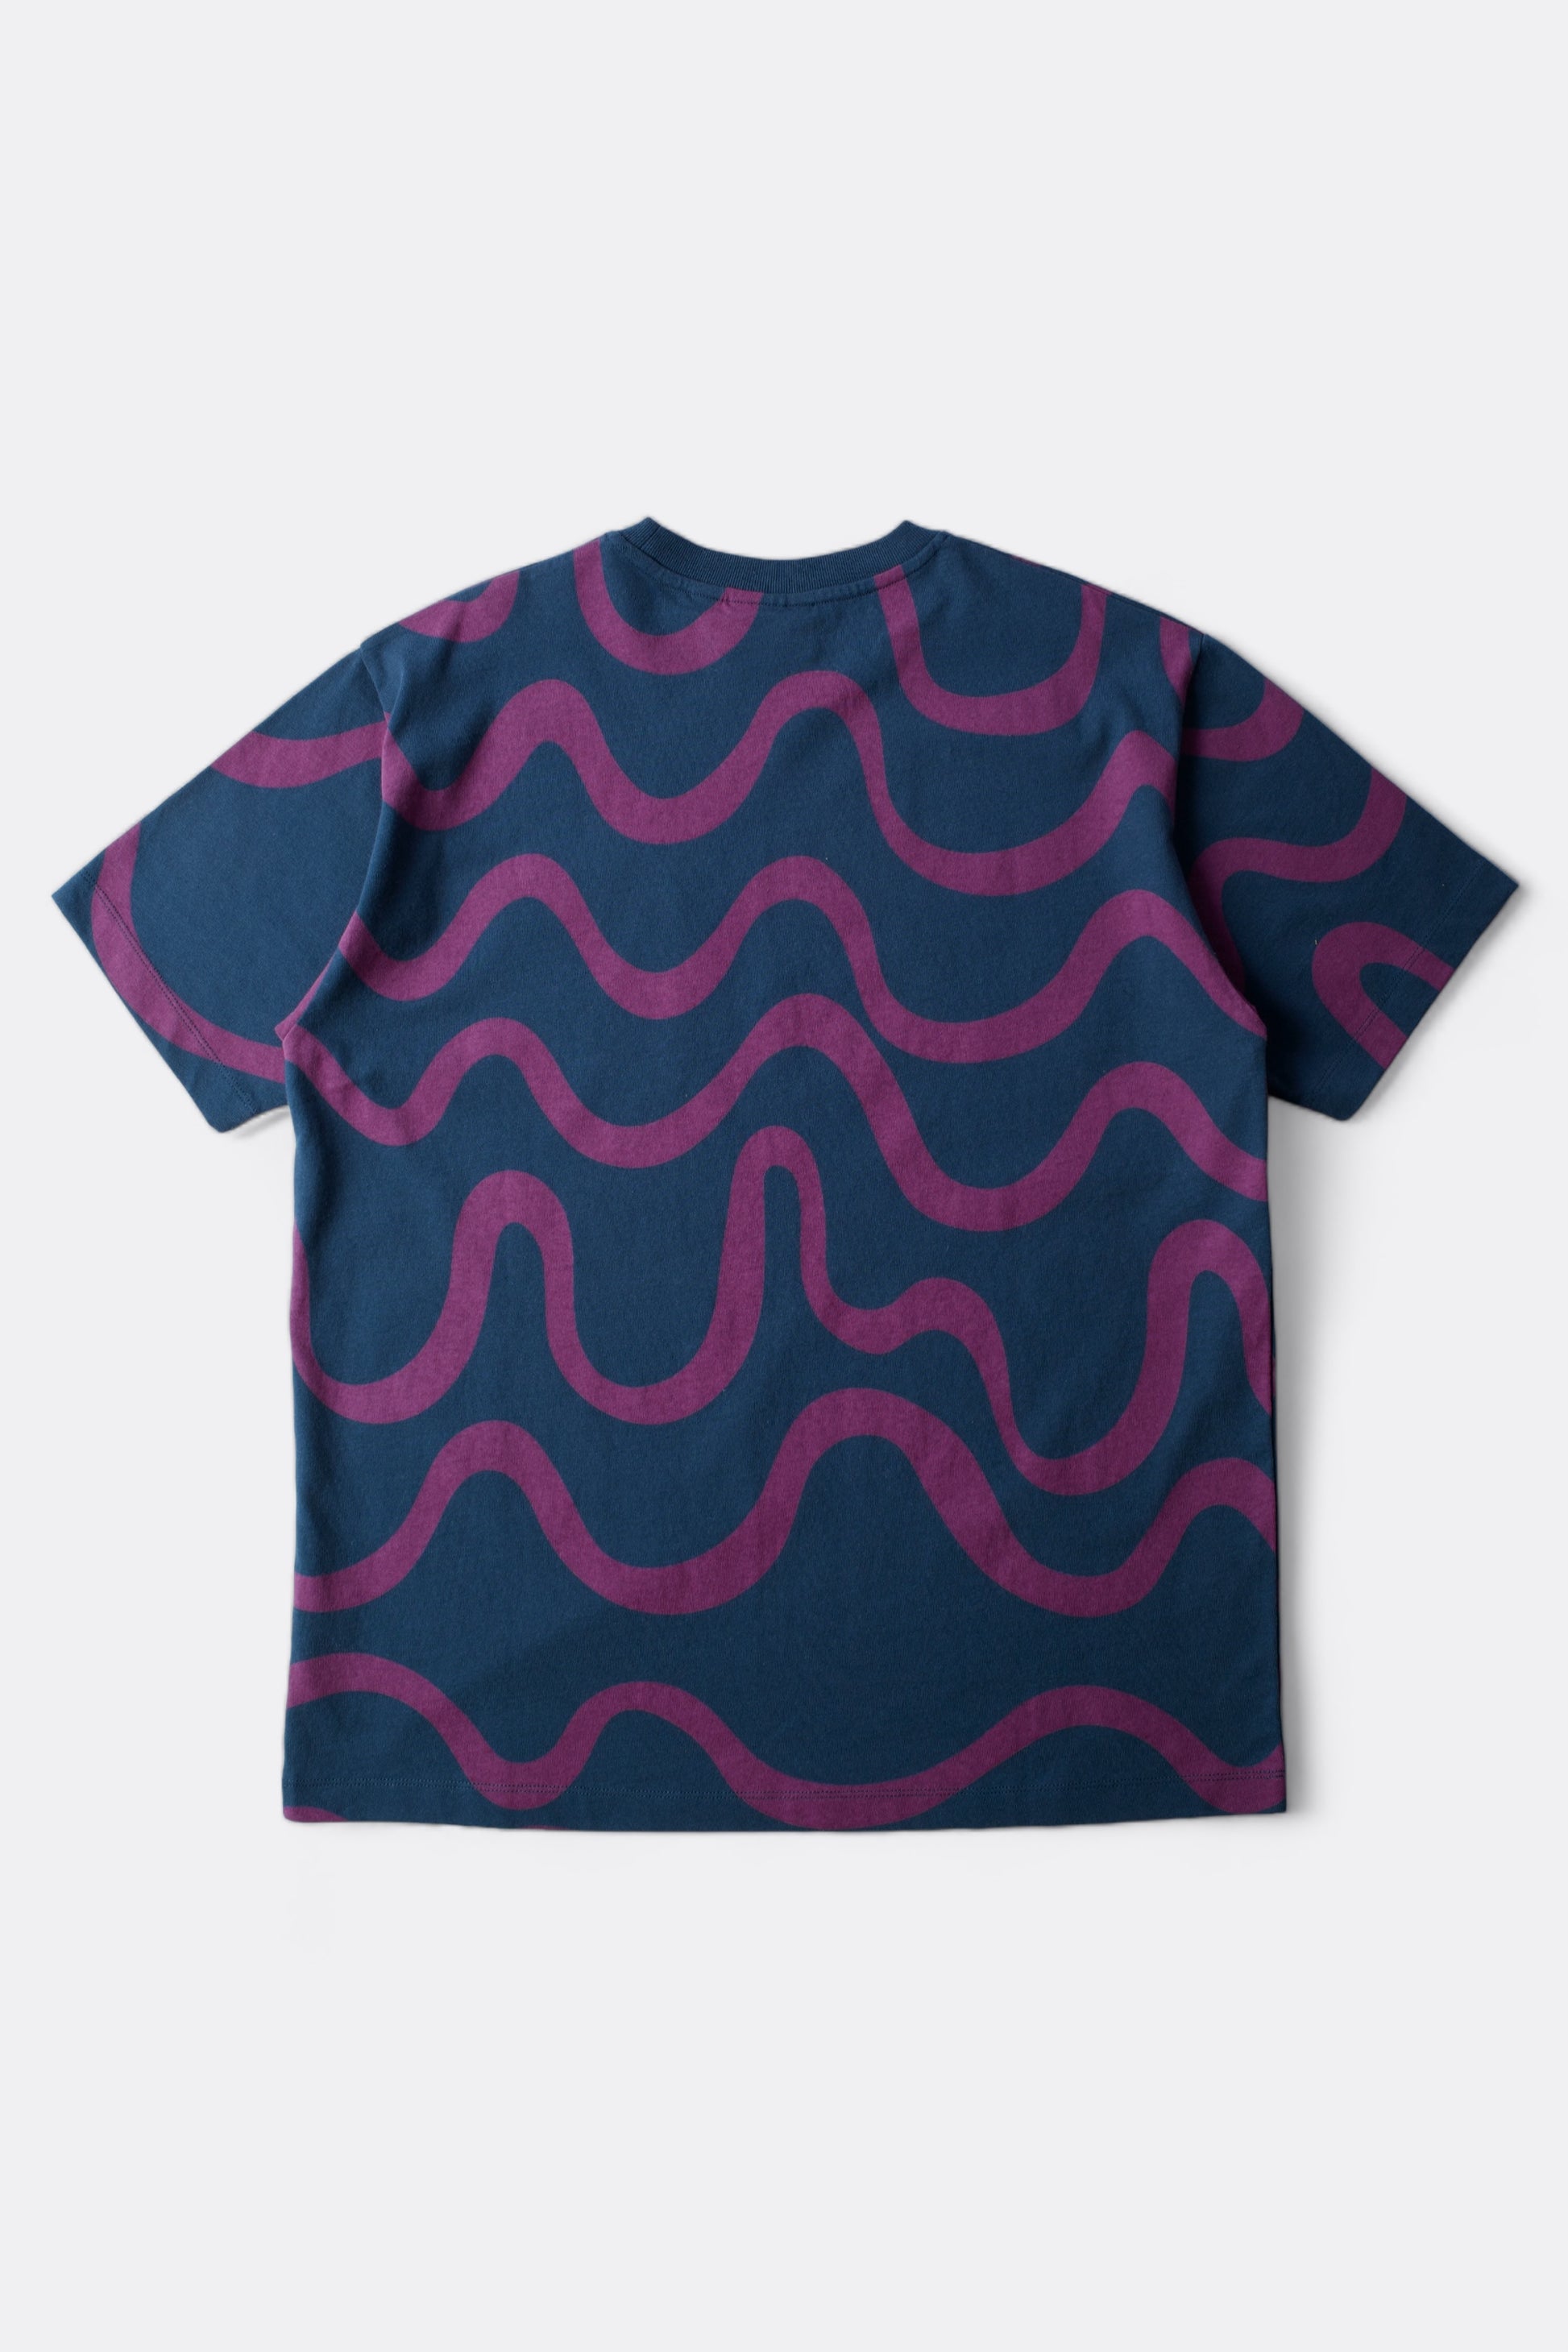 Parra - Sound Waved T-Shirt (Navy Blue)